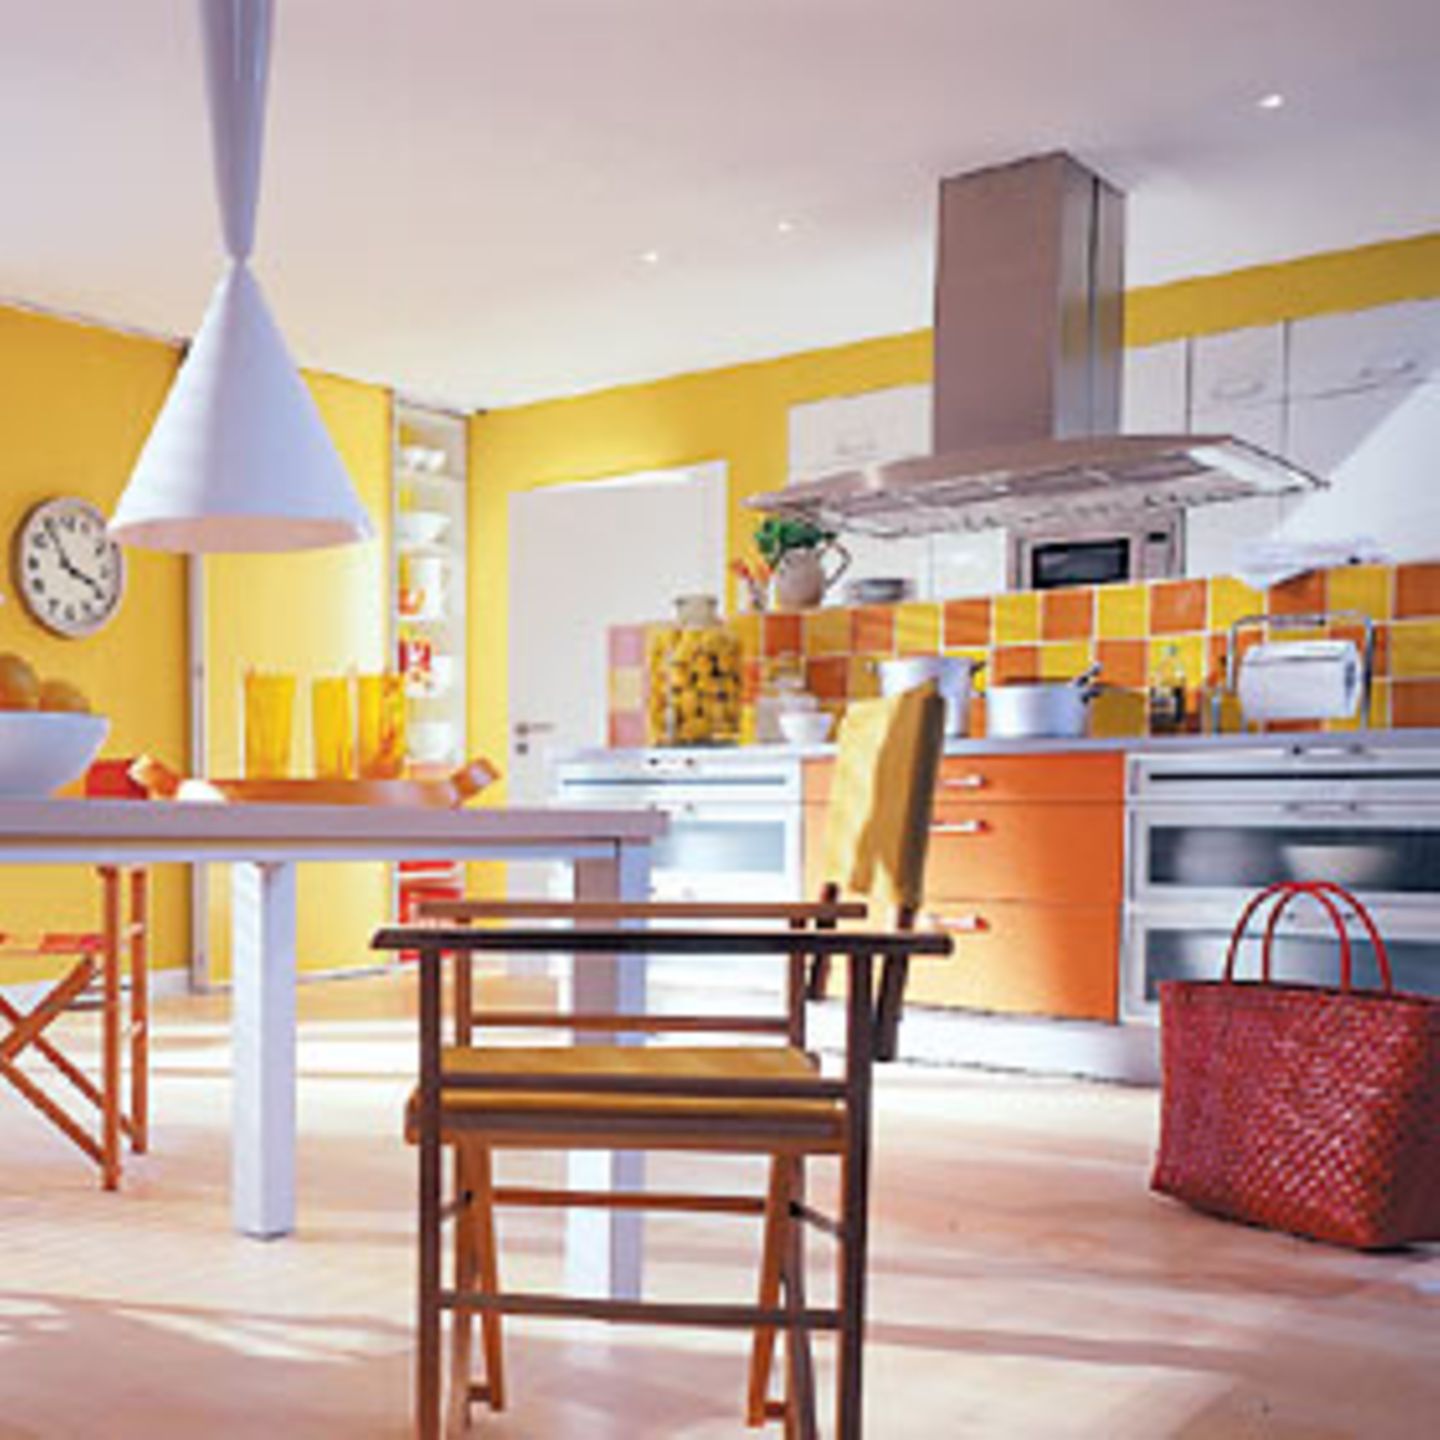 Sonniges Kochen In dieser fröhlichen Küche gelingt jedes Gericht! Leuchtendes Gelb strahlt von den Wänden und wird im Bereich der Küchenzeile mit warmem Orange kombiniert. Verbindendes Element sind die Fliesen: Sie wechseln sich in schöner Regelmäßigkeit ab und greifen sowohl das Gelb als auch das Orange der Küchenmöbel auf. Für Ruhe sorgt viel schlichtes Weiß. Küche: Nolte Windmühlenweg 153 32584 Löhne Fon (05732) 899400 www.nolte-kuechen.de Fliesen: Villeroy & Boch Postfach 1120 66688 Mettlach Fon (06864) 810 www.villeroy-boch.de Hängeleuchten: Flos Via Angelo Faini 2 I-25073 Bovezzo Fon (+39) 03024381 www.flos.com